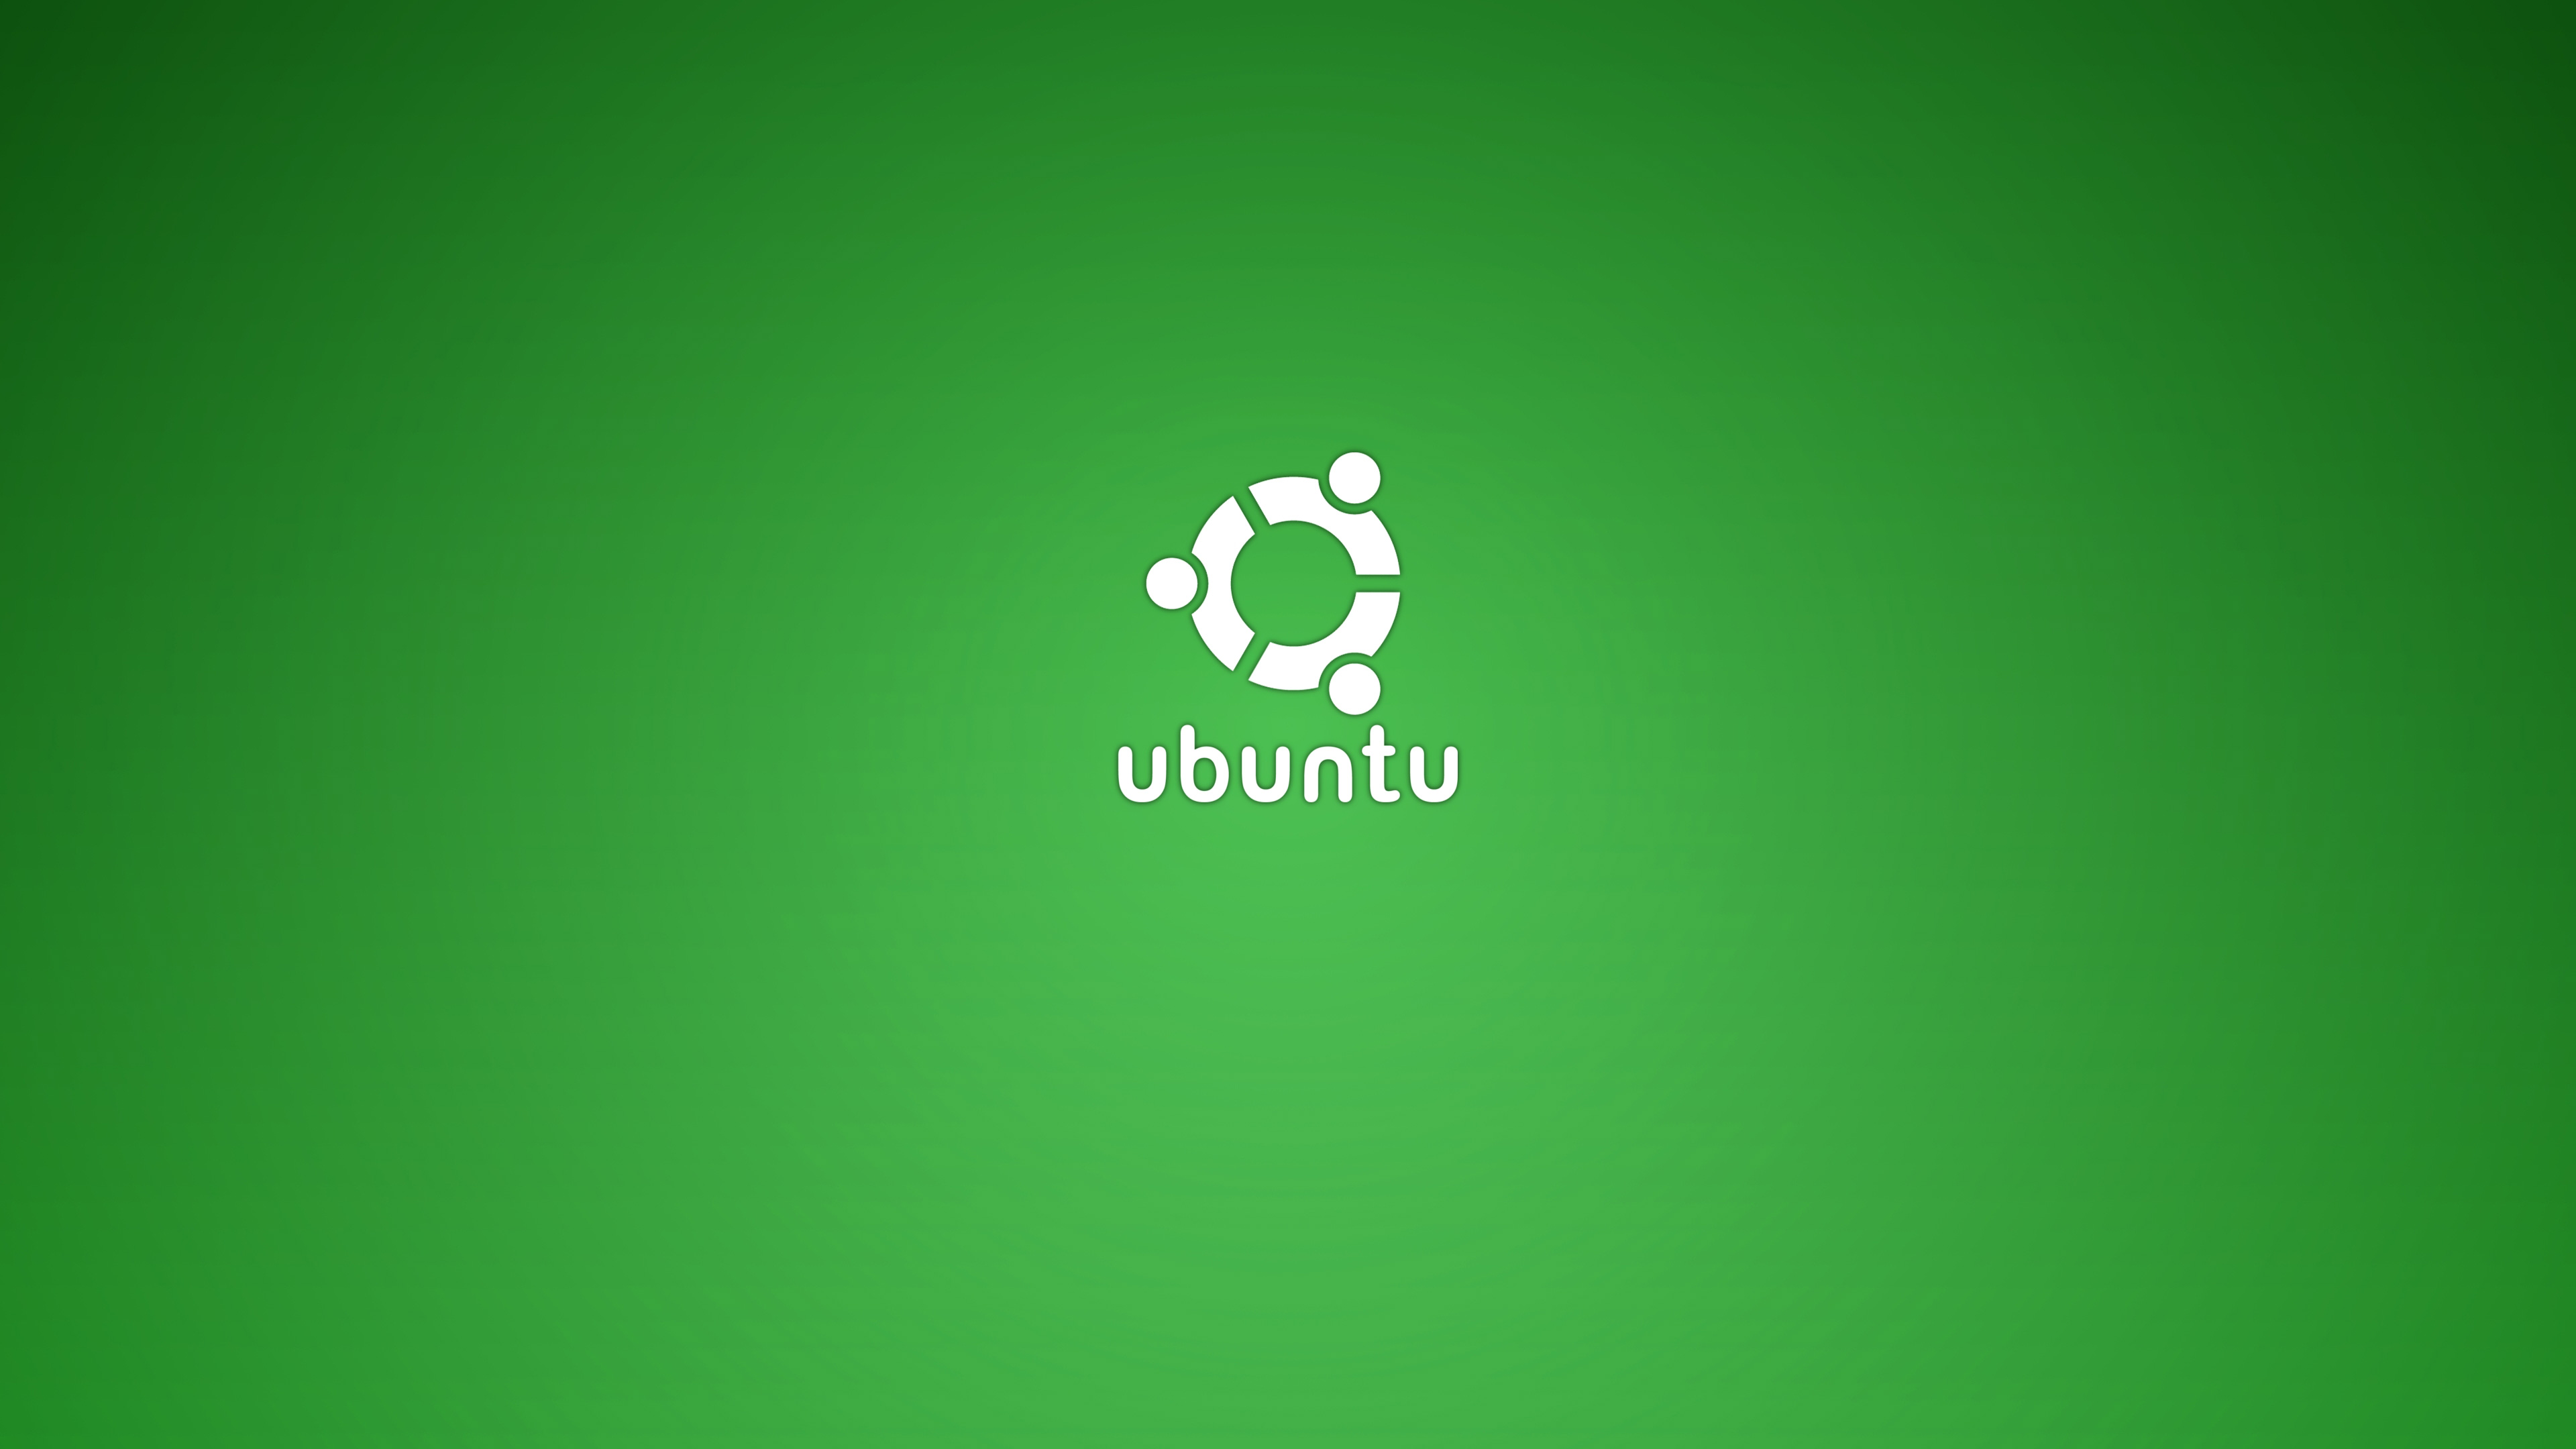 ubuntu fondo de pantalla,verde,fuente,texto,gráficos,sistema operativo